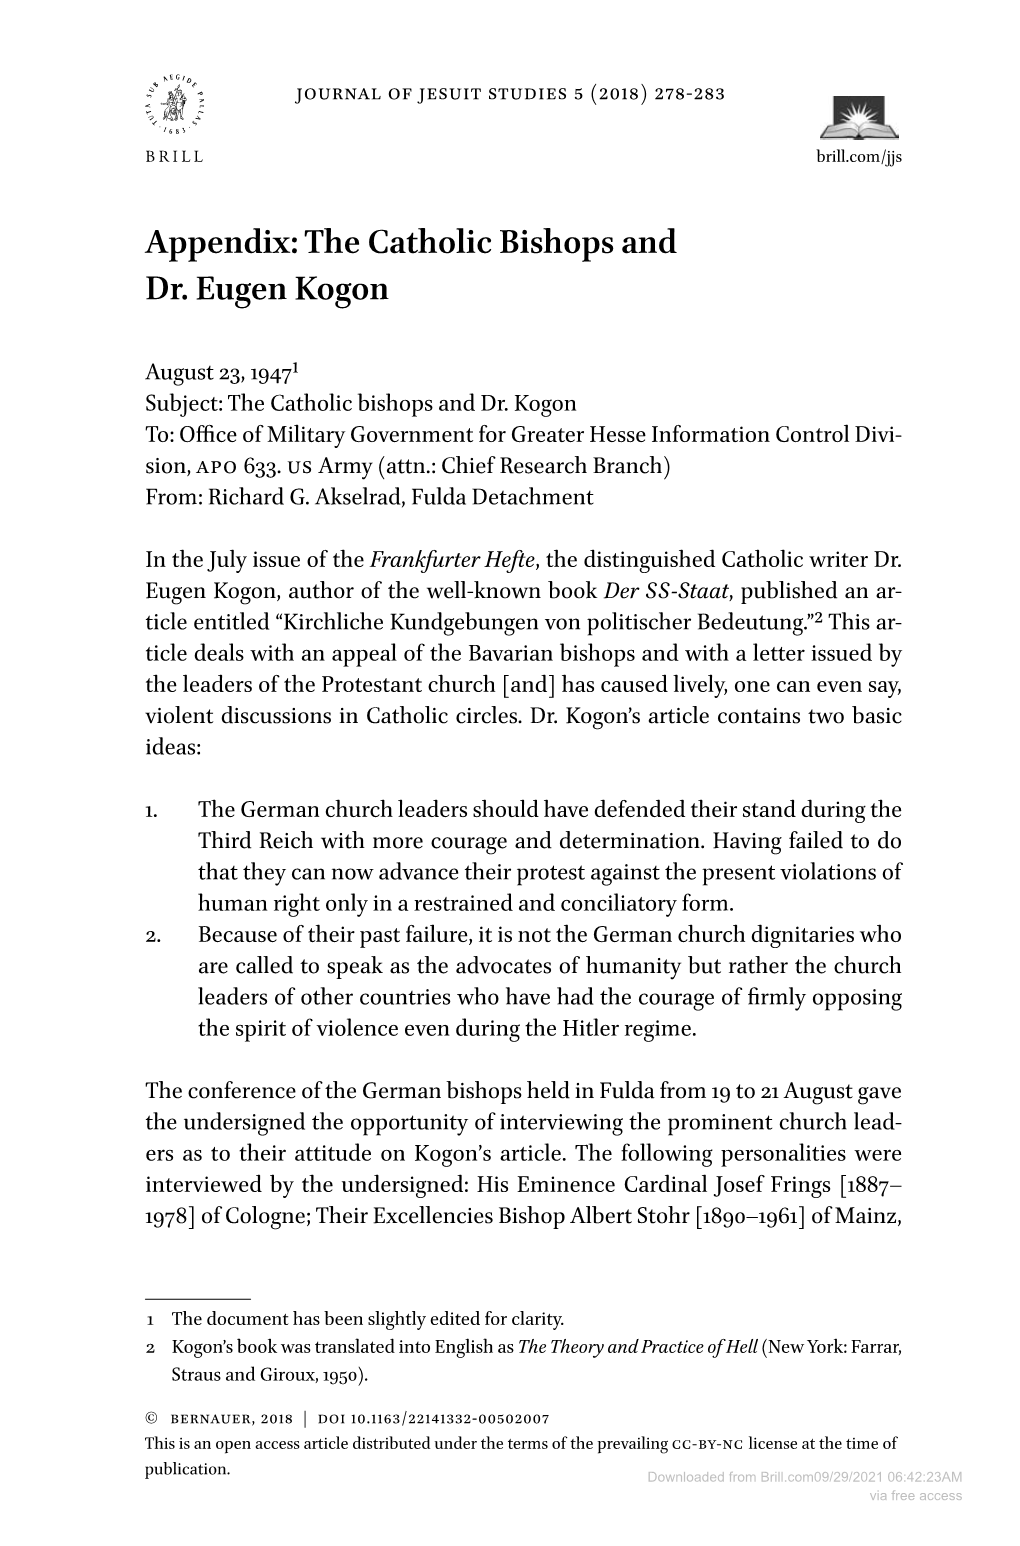 The Catholic Bishops and Dr. Eugen Kogon